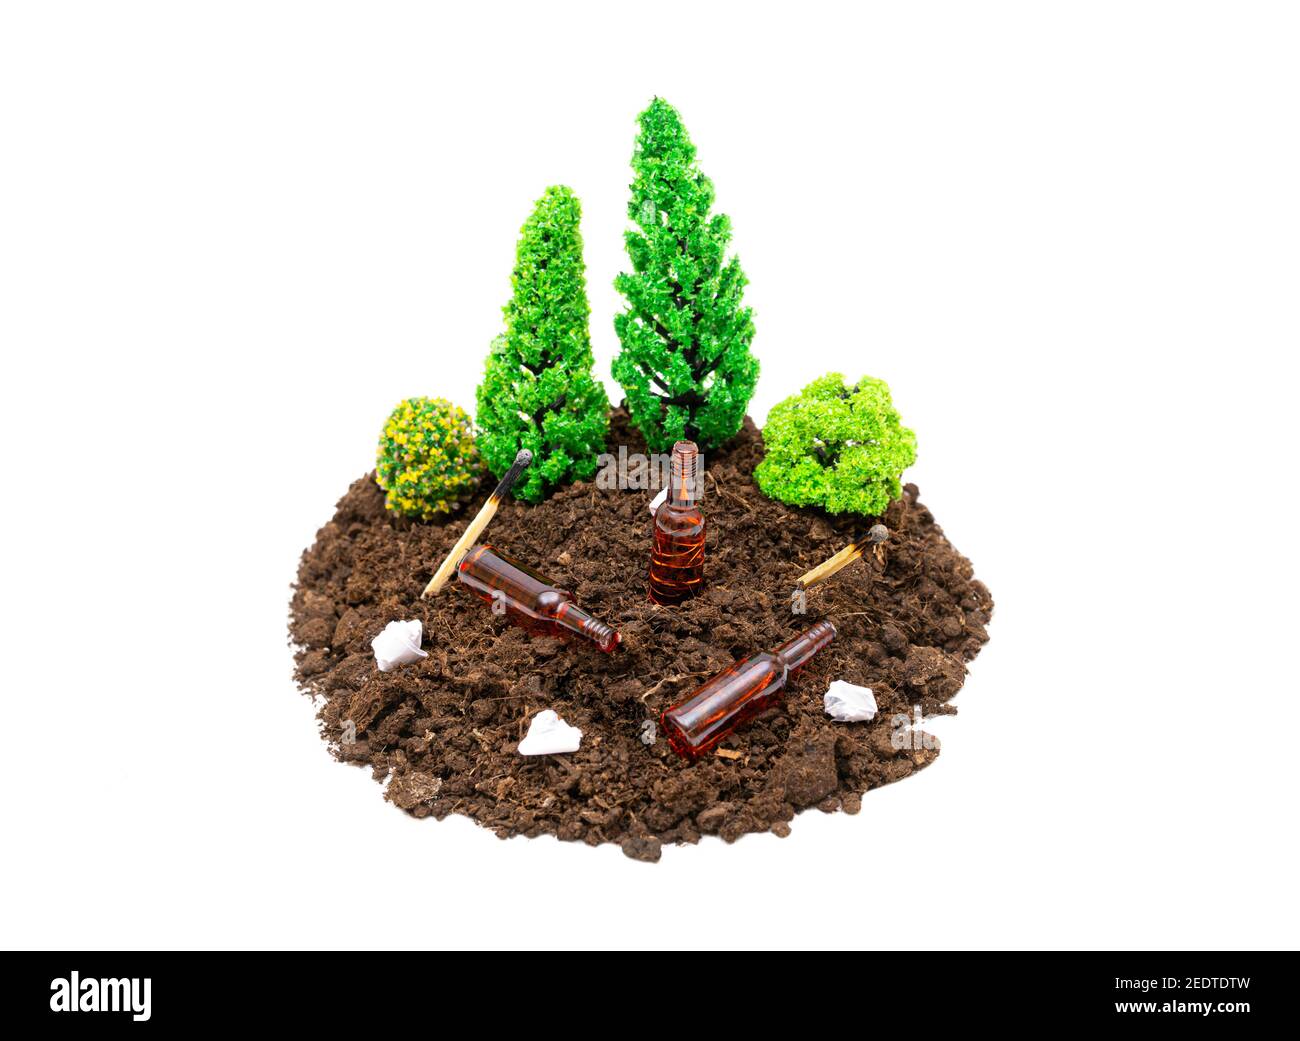 Composizione di foresta giocattolo in miniatura con bottiglie di birra, rifiuti di carta e partite che giacciono intorno.il concetto di mantenere foreste e parchi puliti. Foto Stock